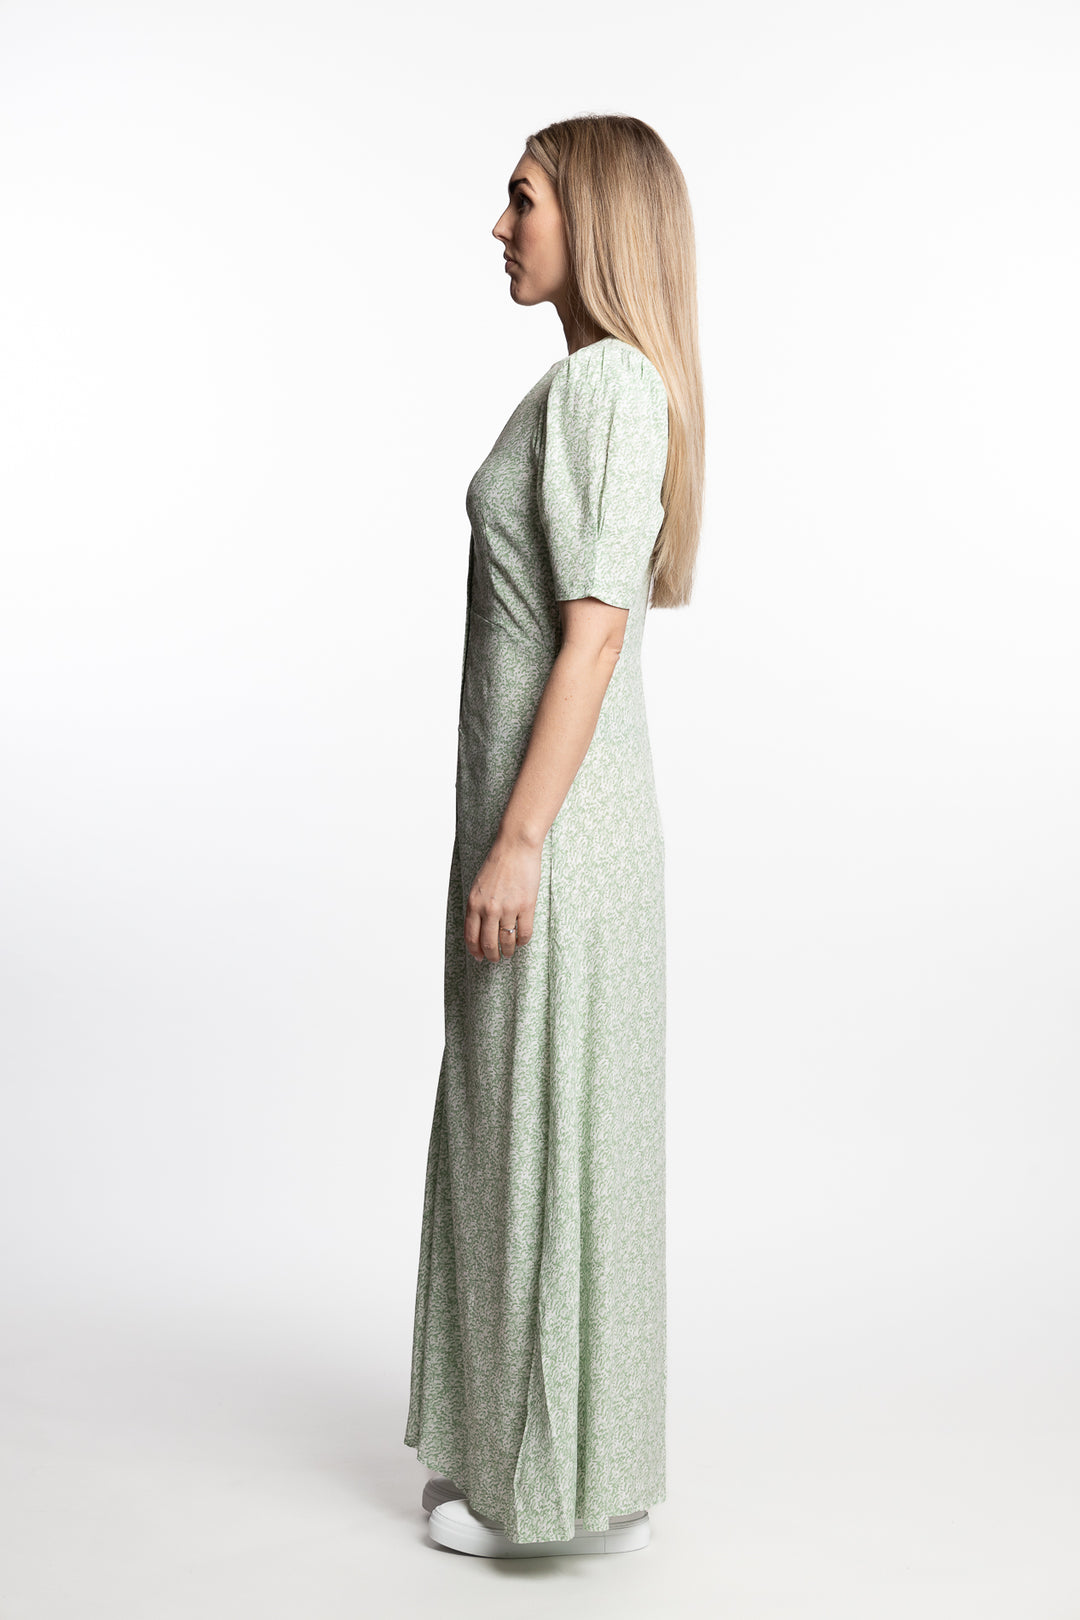 Ellen Long Dress- Green Shades